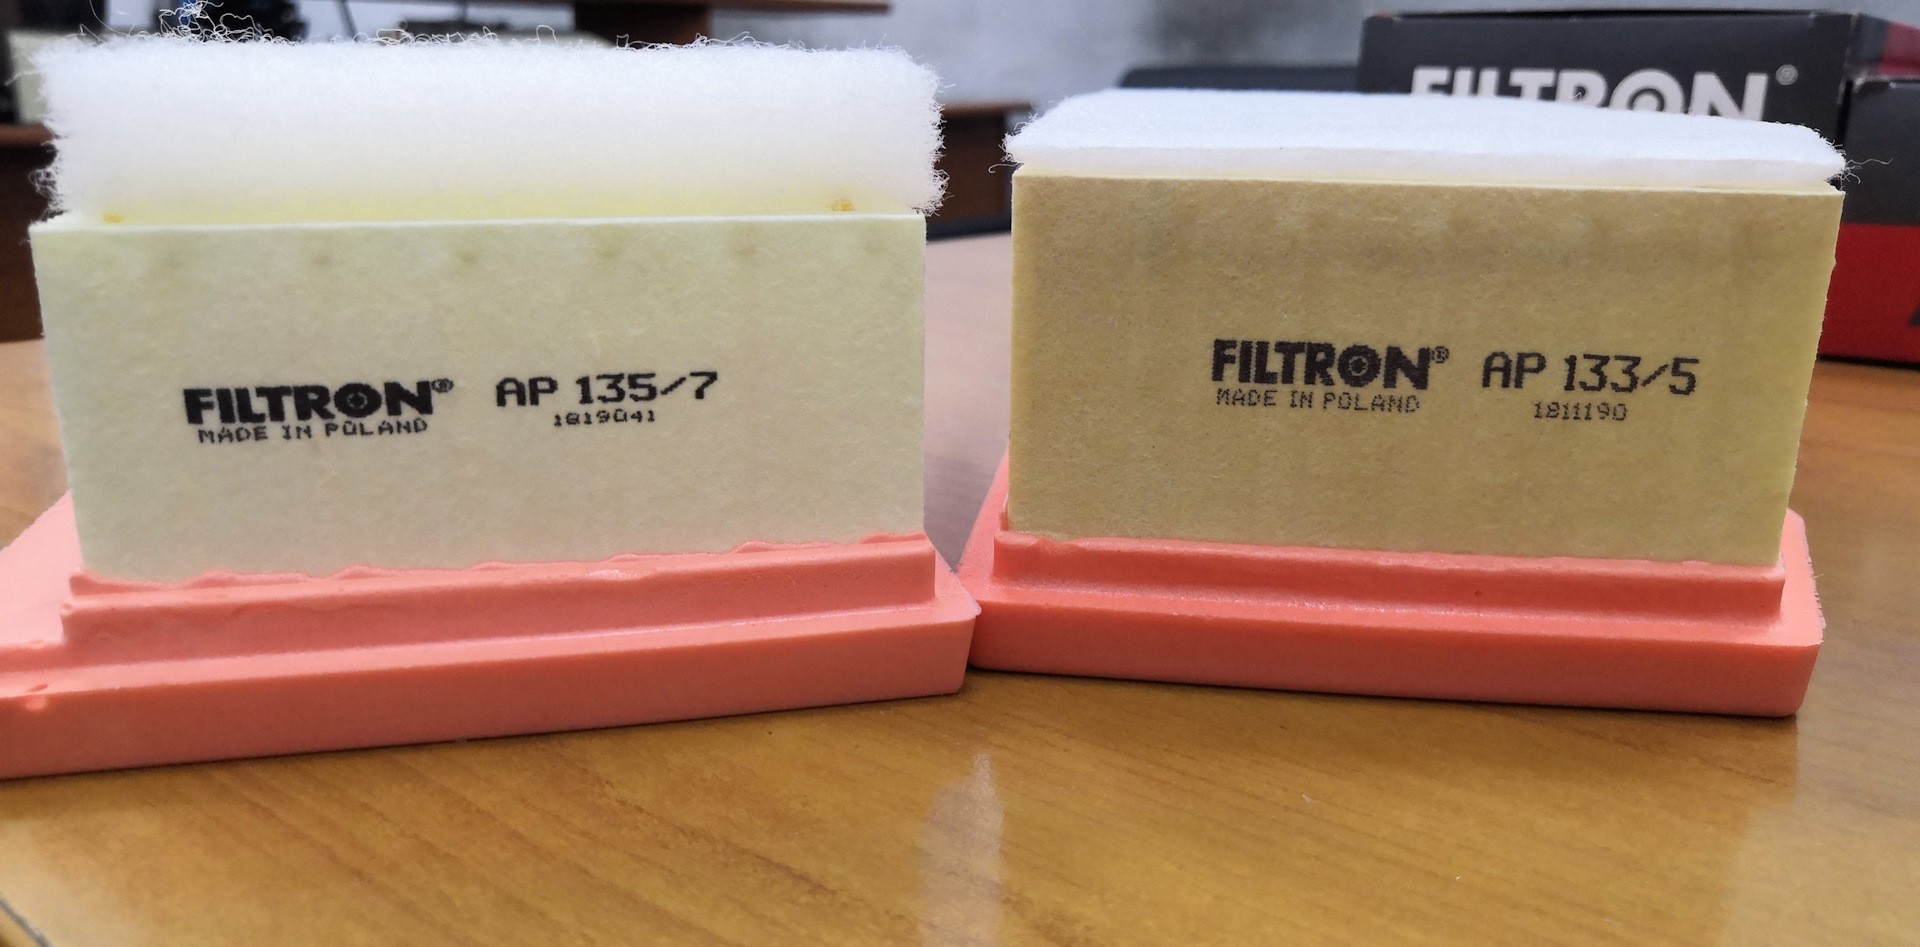 Ap фильтр воздушный. Фильтр воздушный Фильтрон 133/5. Воздушный фильтр FILTRON ap133. Фильтрон AP 133/5. FILTRON AP 133/5 фильтр воздушный Применяемость.